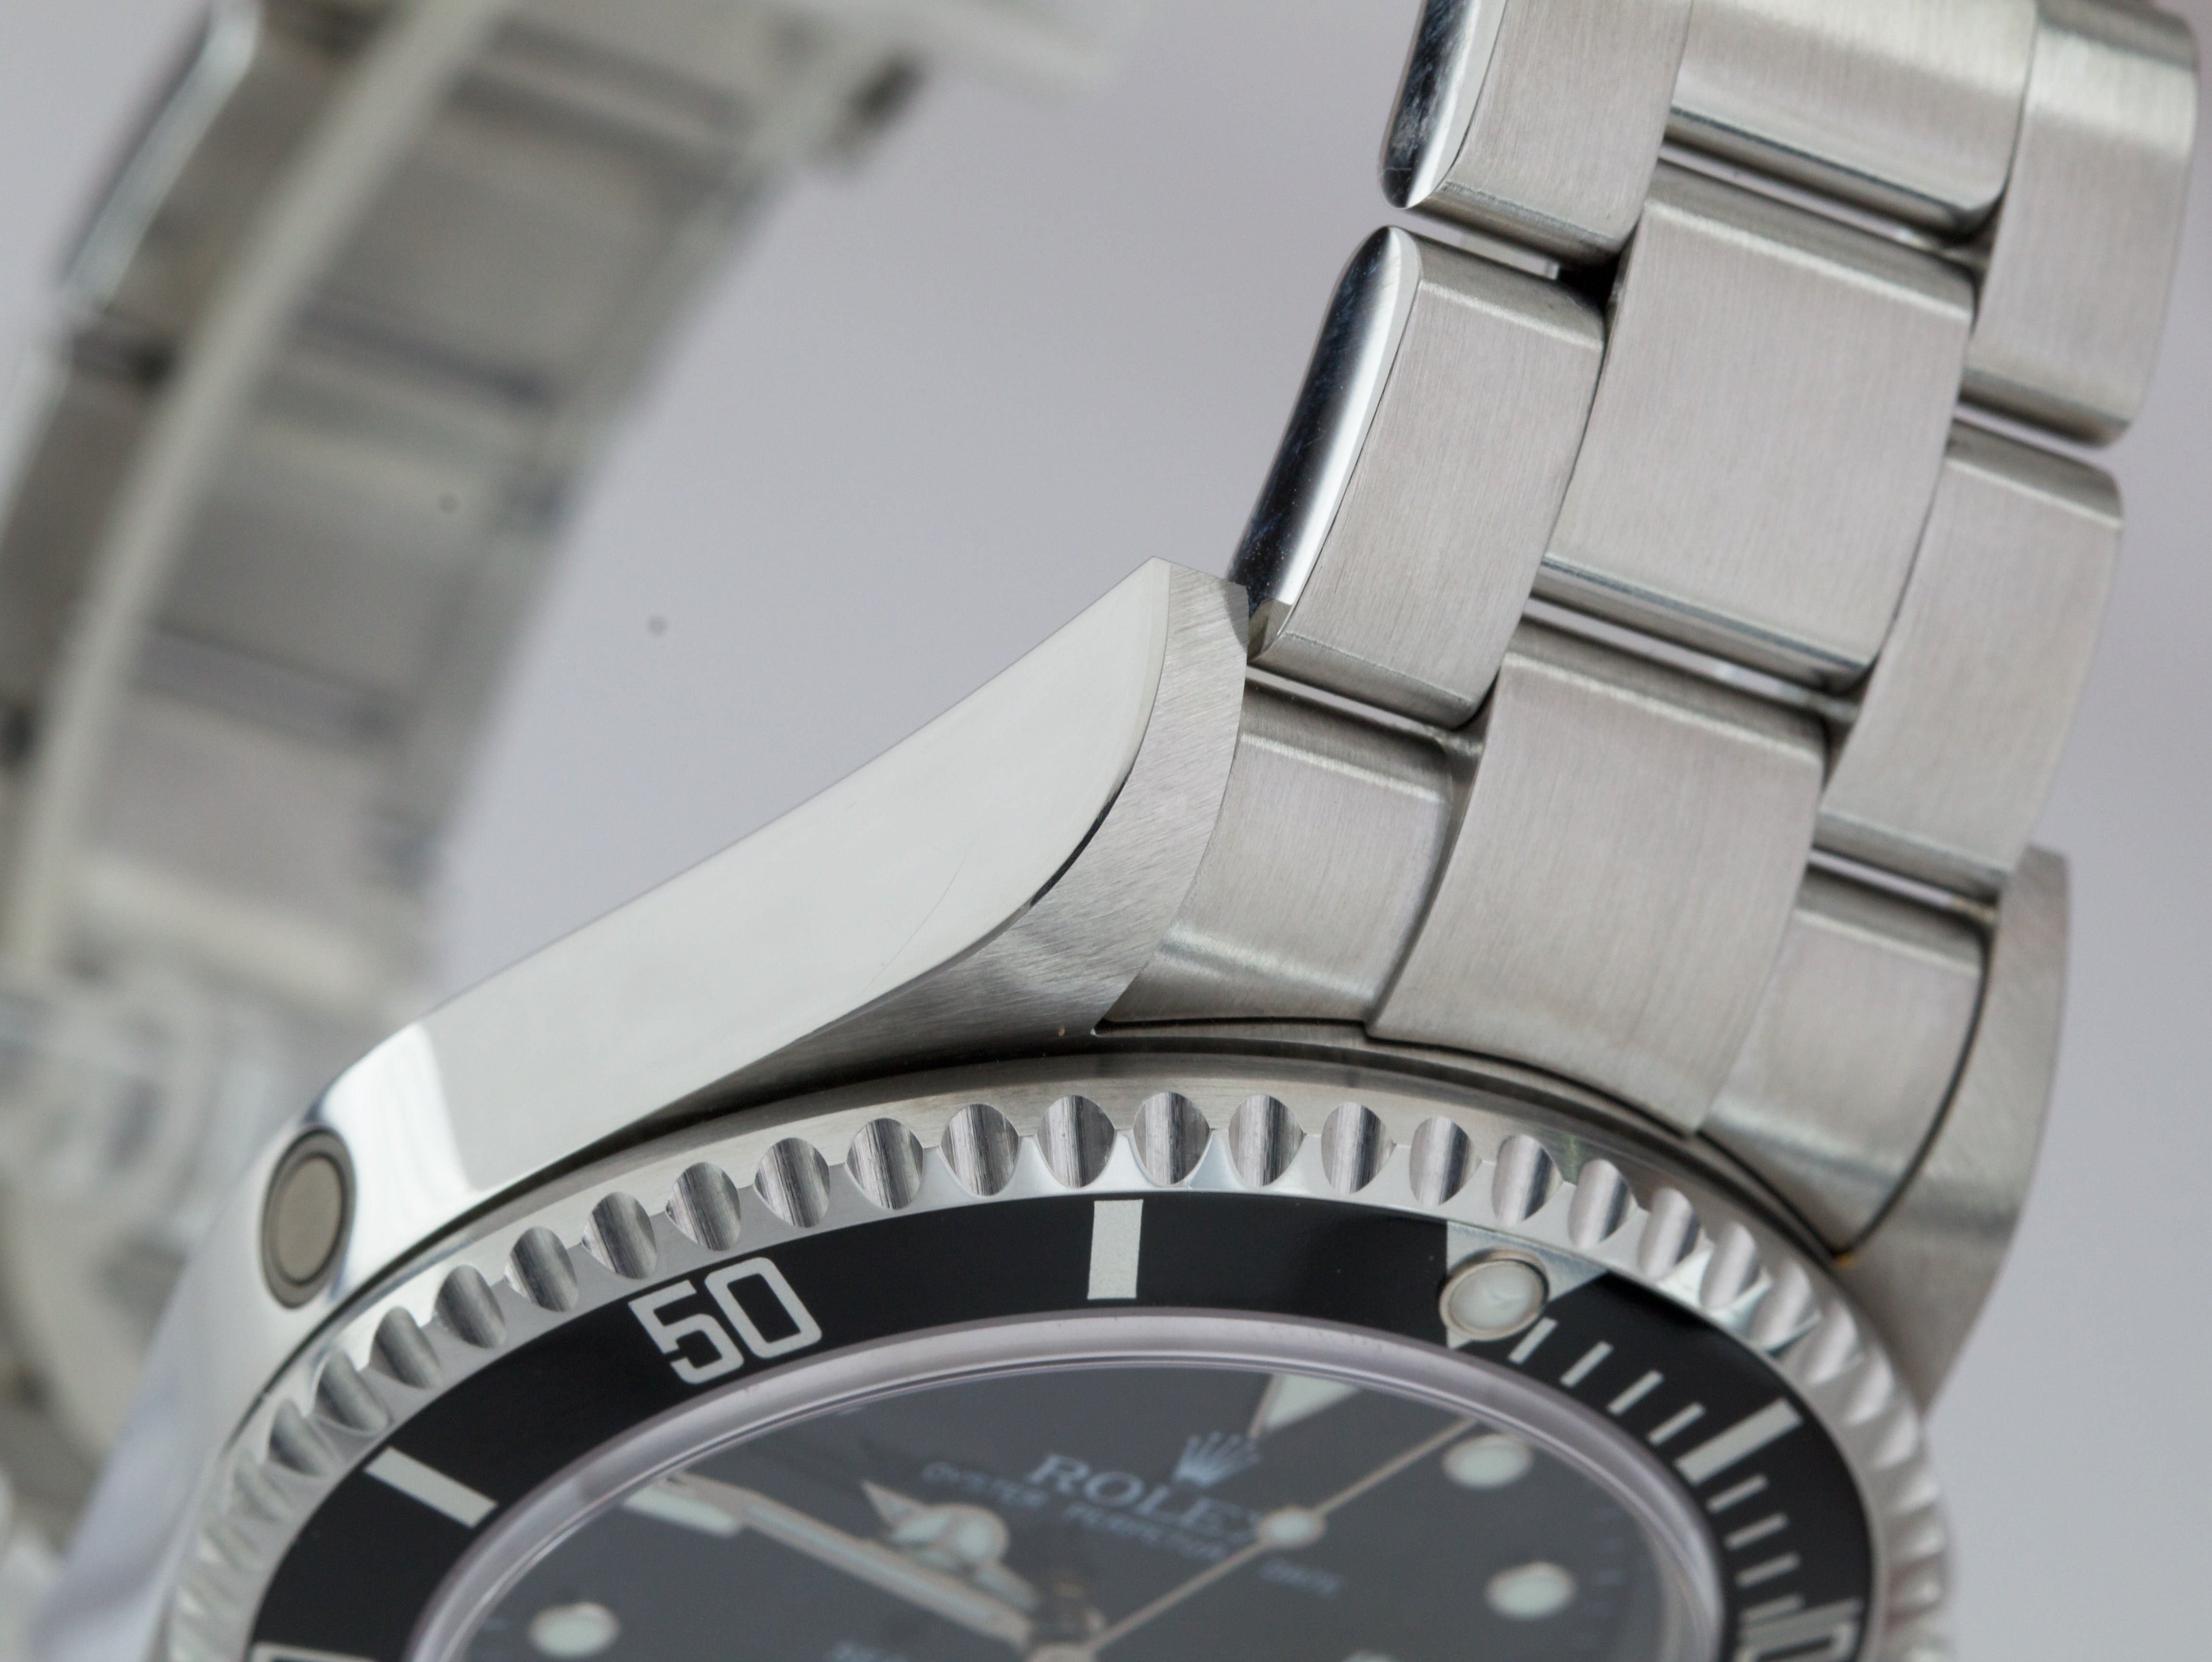 MINT LNIB UNPOLISHED 2004 Rolex Sea-Dweller Black 40mm Watch 16600 FULL SET B+P